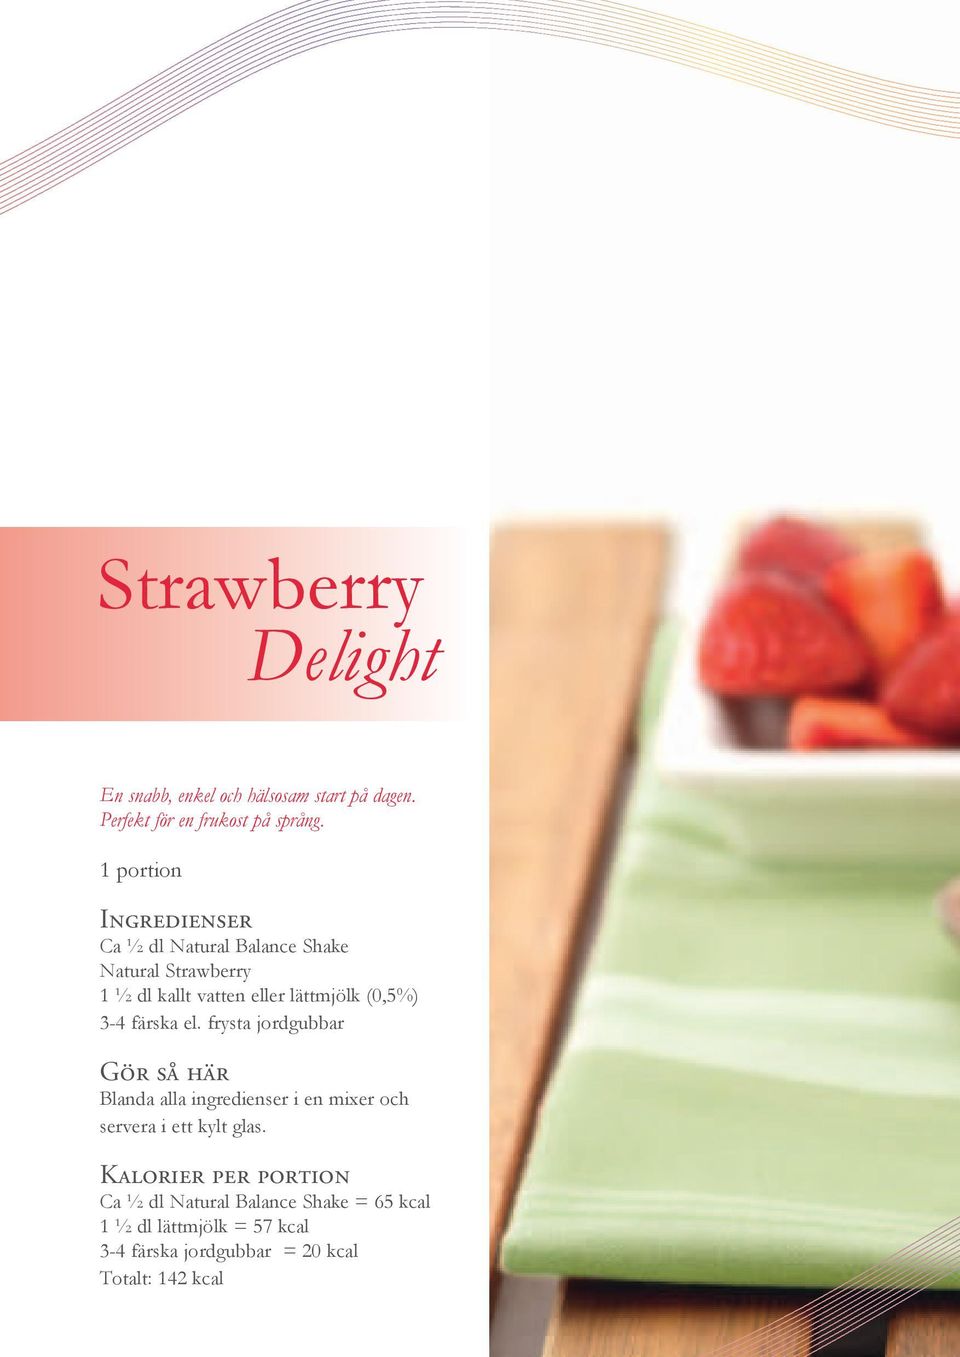 Natural Strawberry 1 ½ dl kallt vatten eller lättmjölk (0,5%) 3-4 färska el.